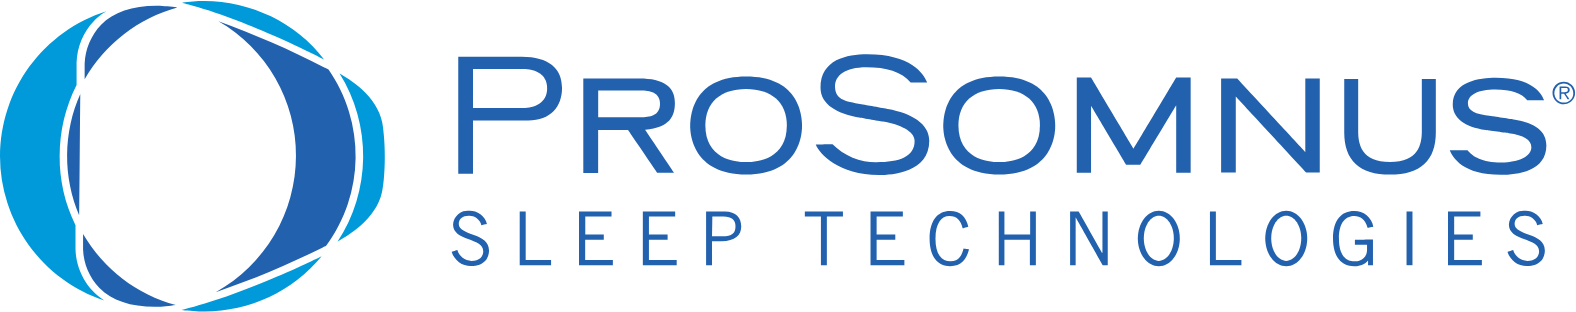 ProSomnus logo large (transparent PNG)